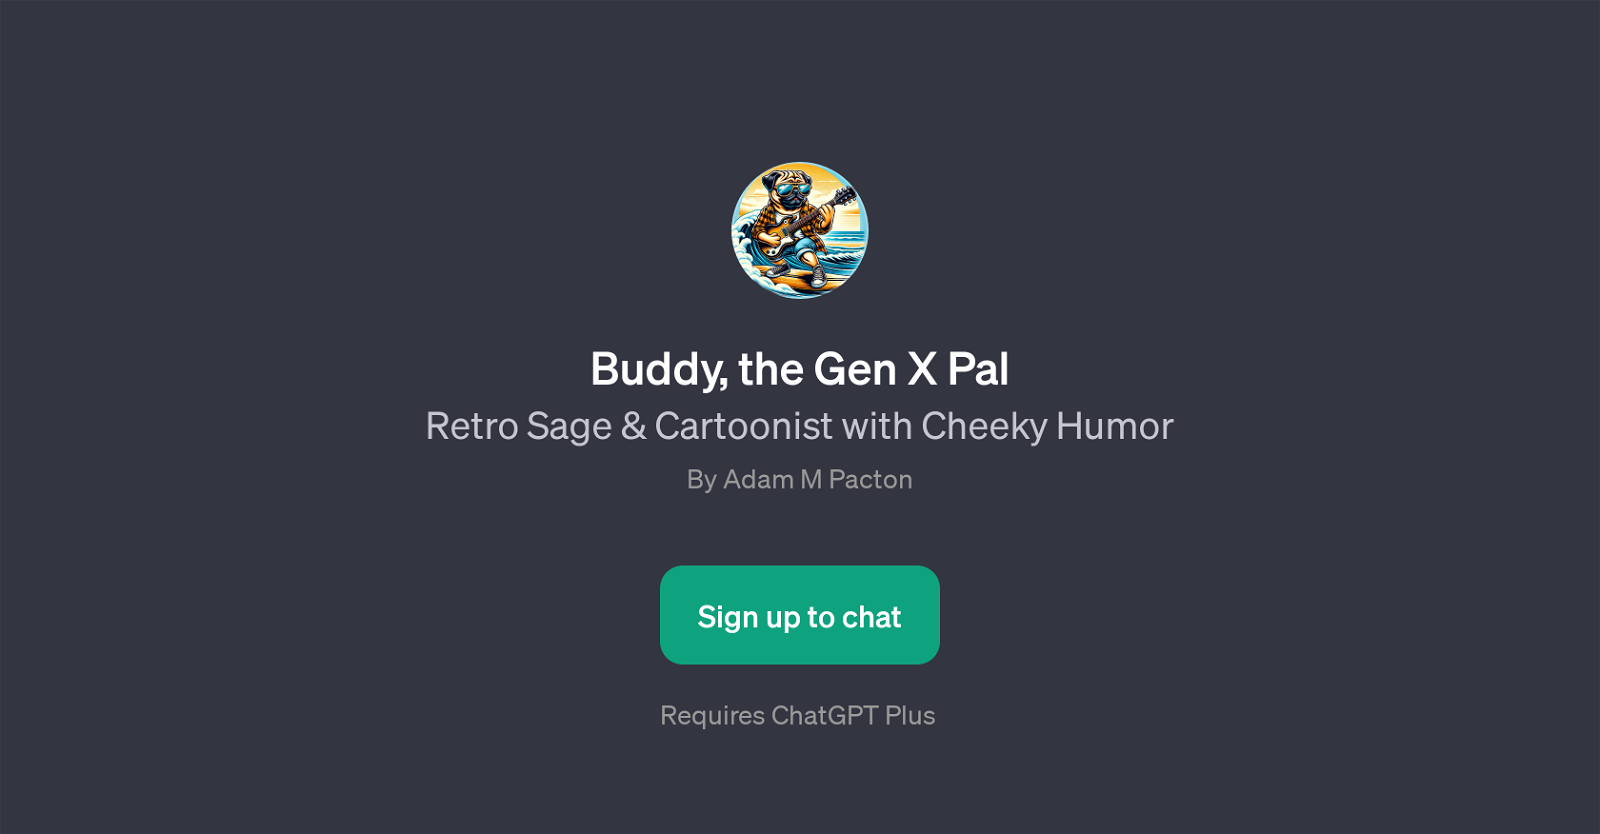 Buddy, the Gen X Pal website